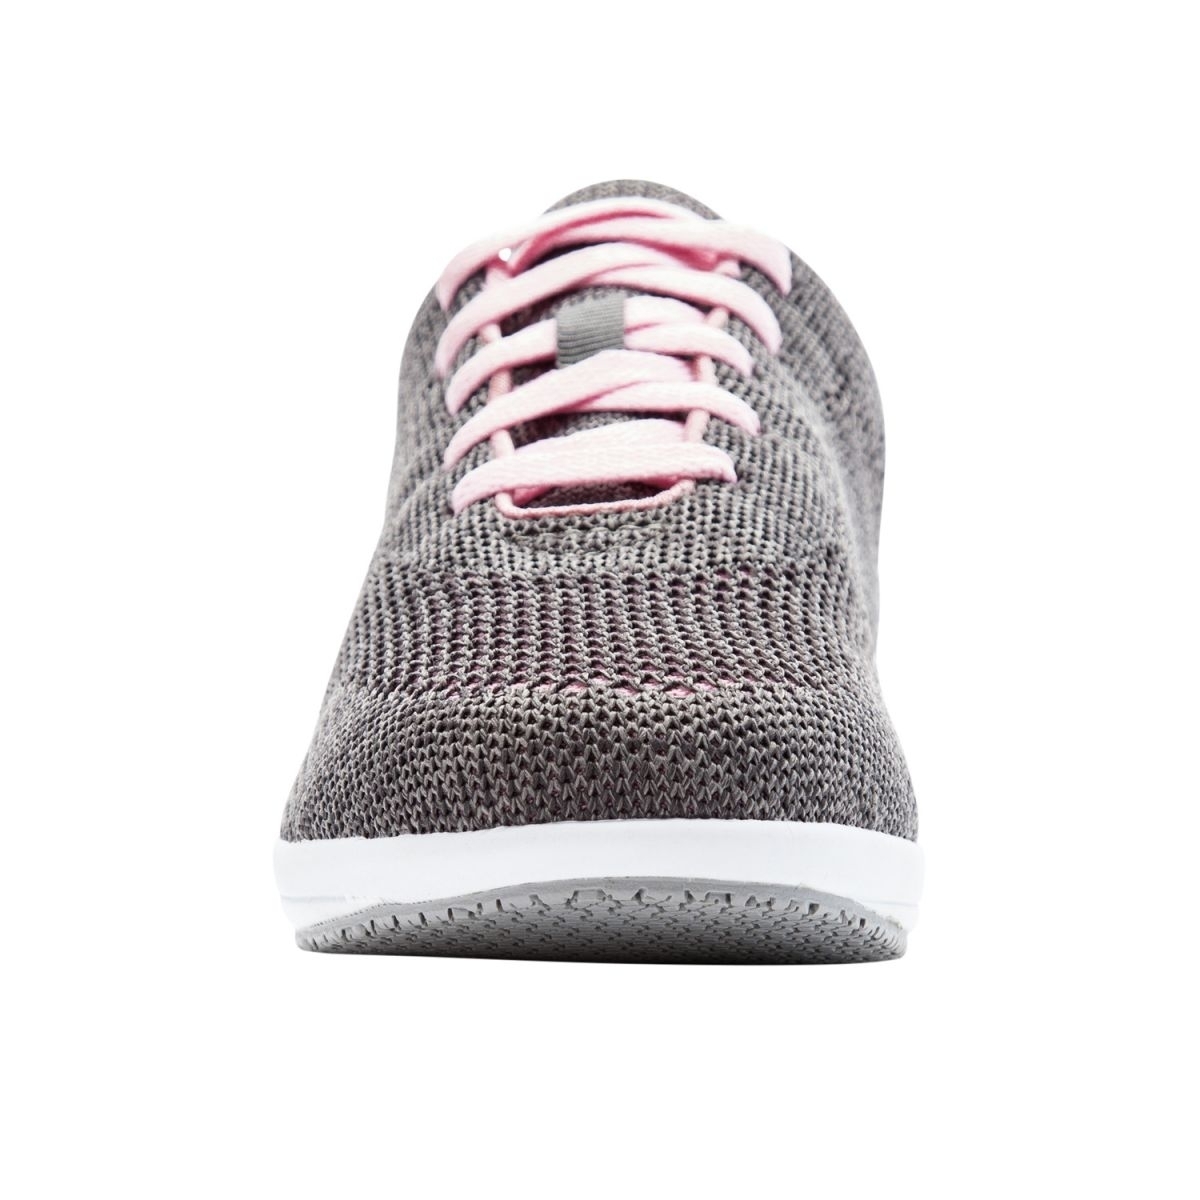 Propet Women's Washable Walker Evolution Sneaker Grey/Pink - WCS012MGPI GREY/PINK - GREY/PINK, 10-2A